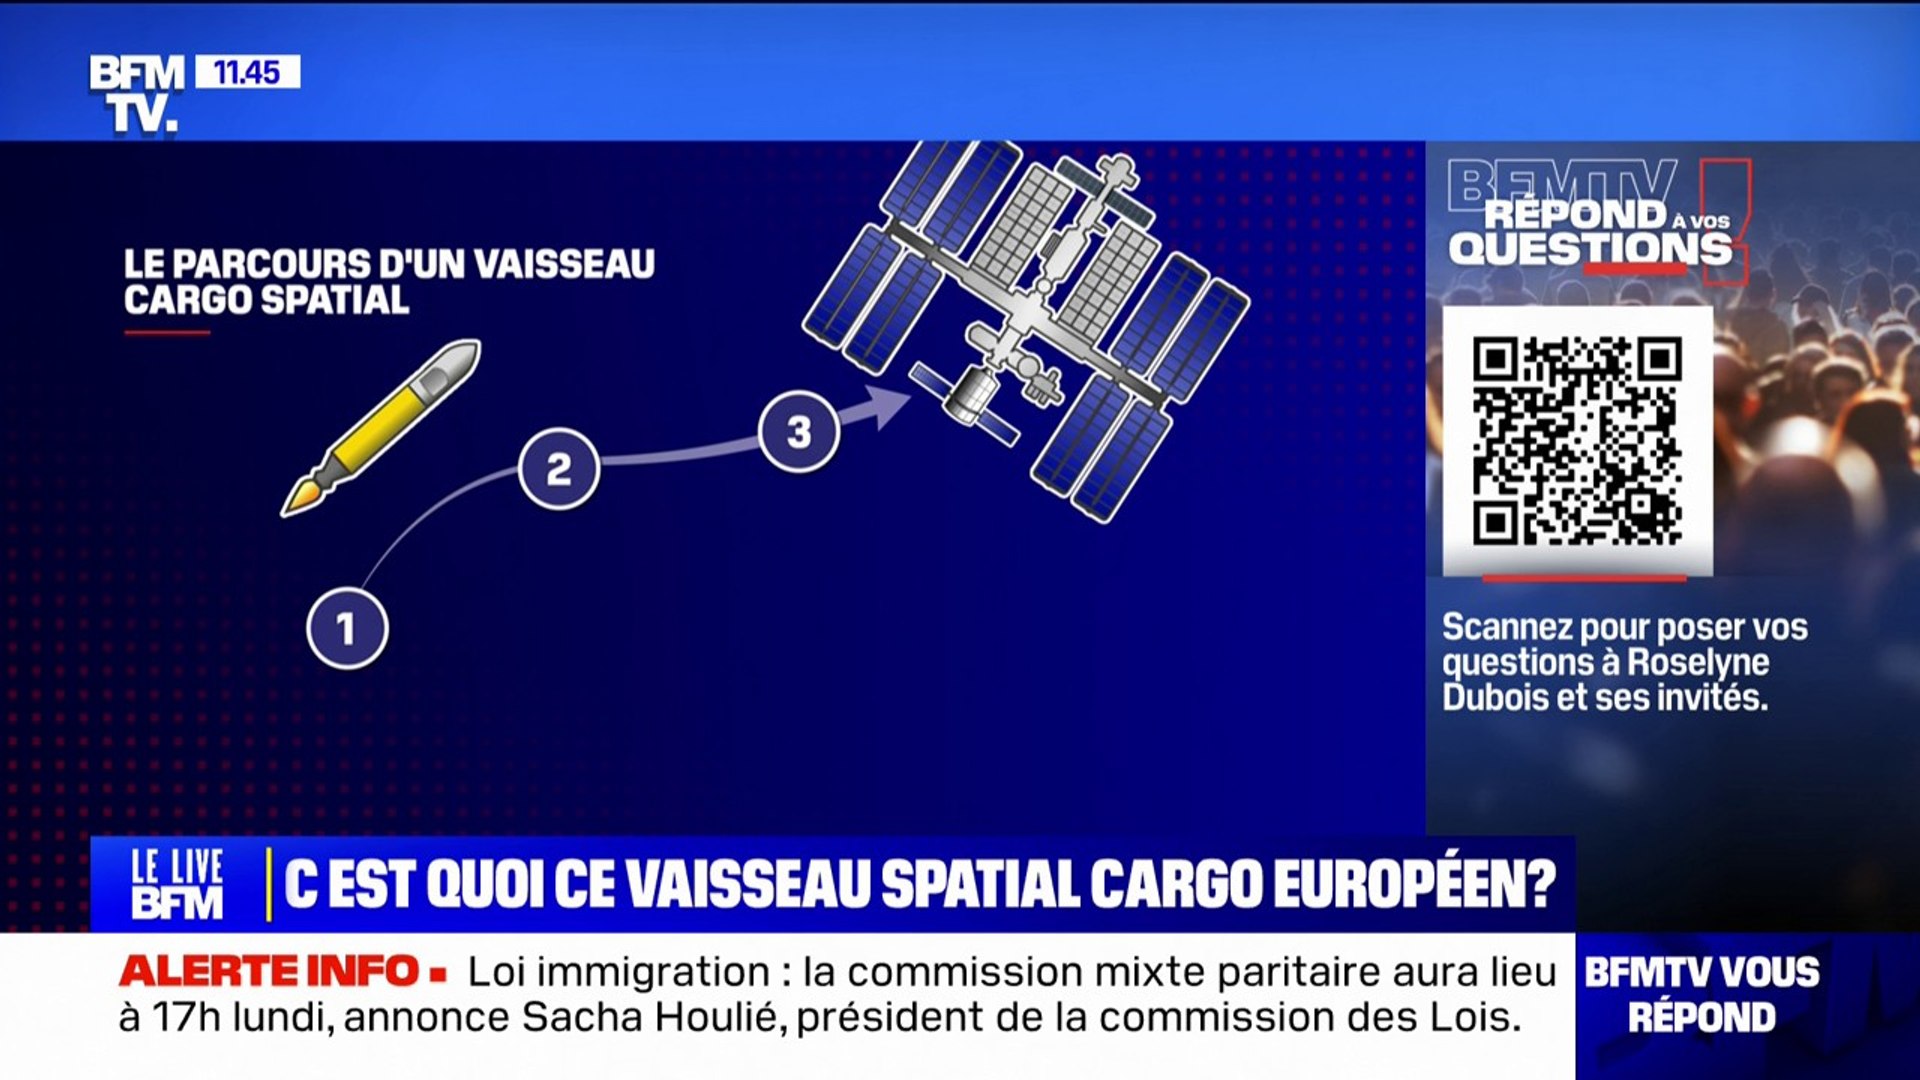 C'est quoi ce vaisseau spatial cargo européen? BFMTV répond à vos questions  - Vidéo Dailymotion